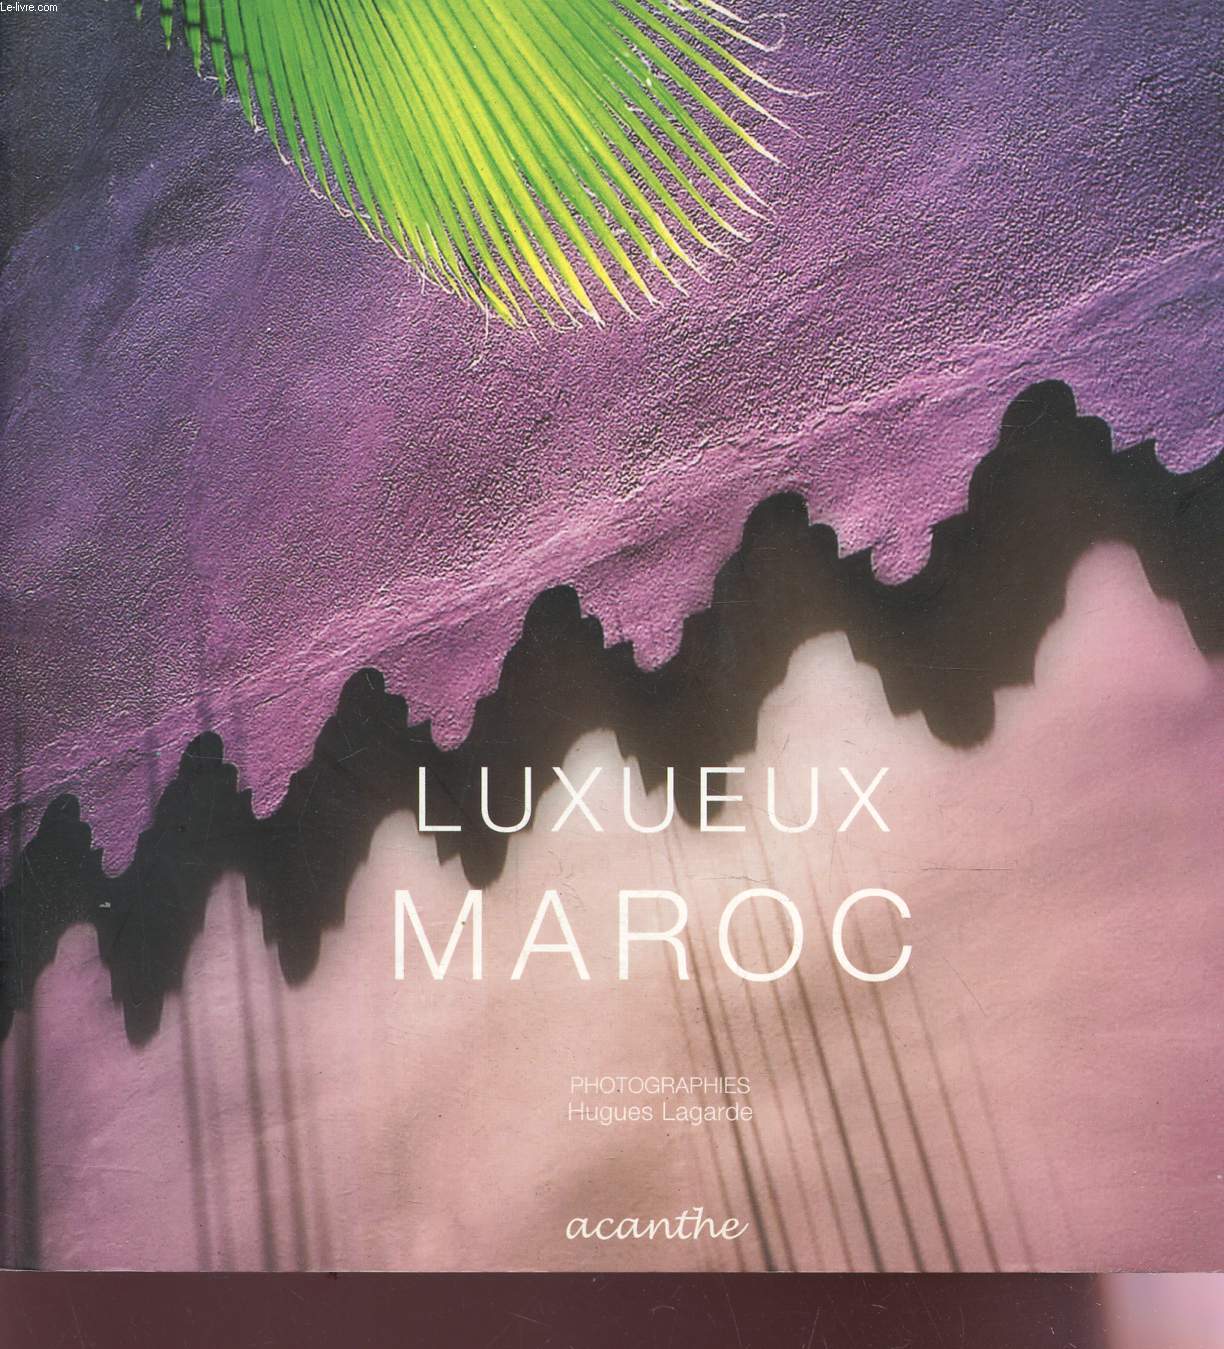 LUXUEUX MAROC